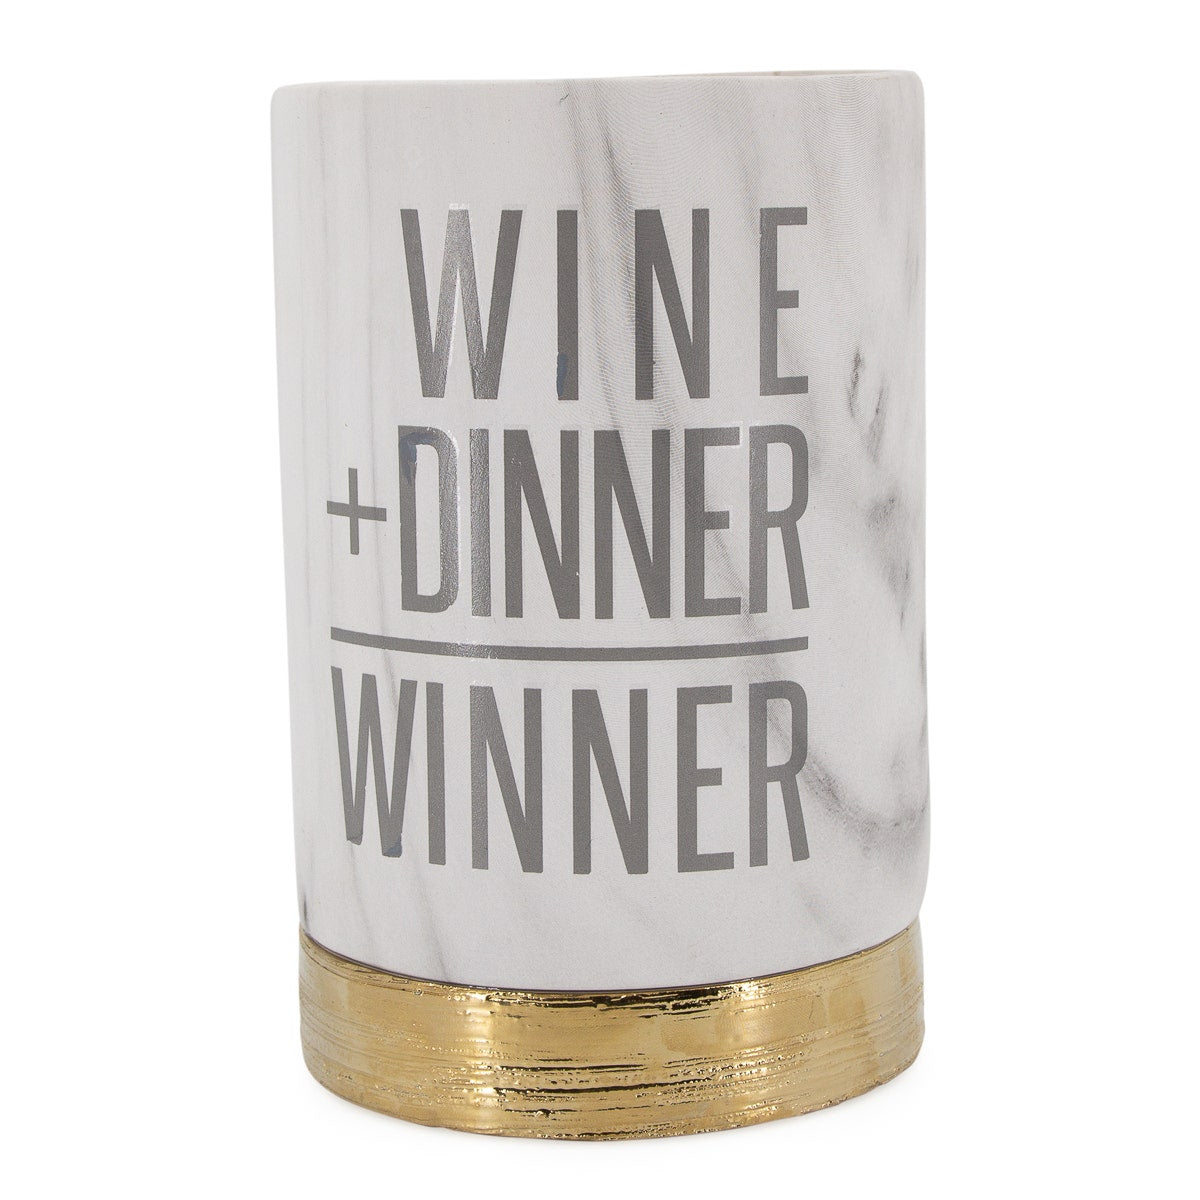 Ceramic Wine Bottle Holder – For Drinks With Dinner & More